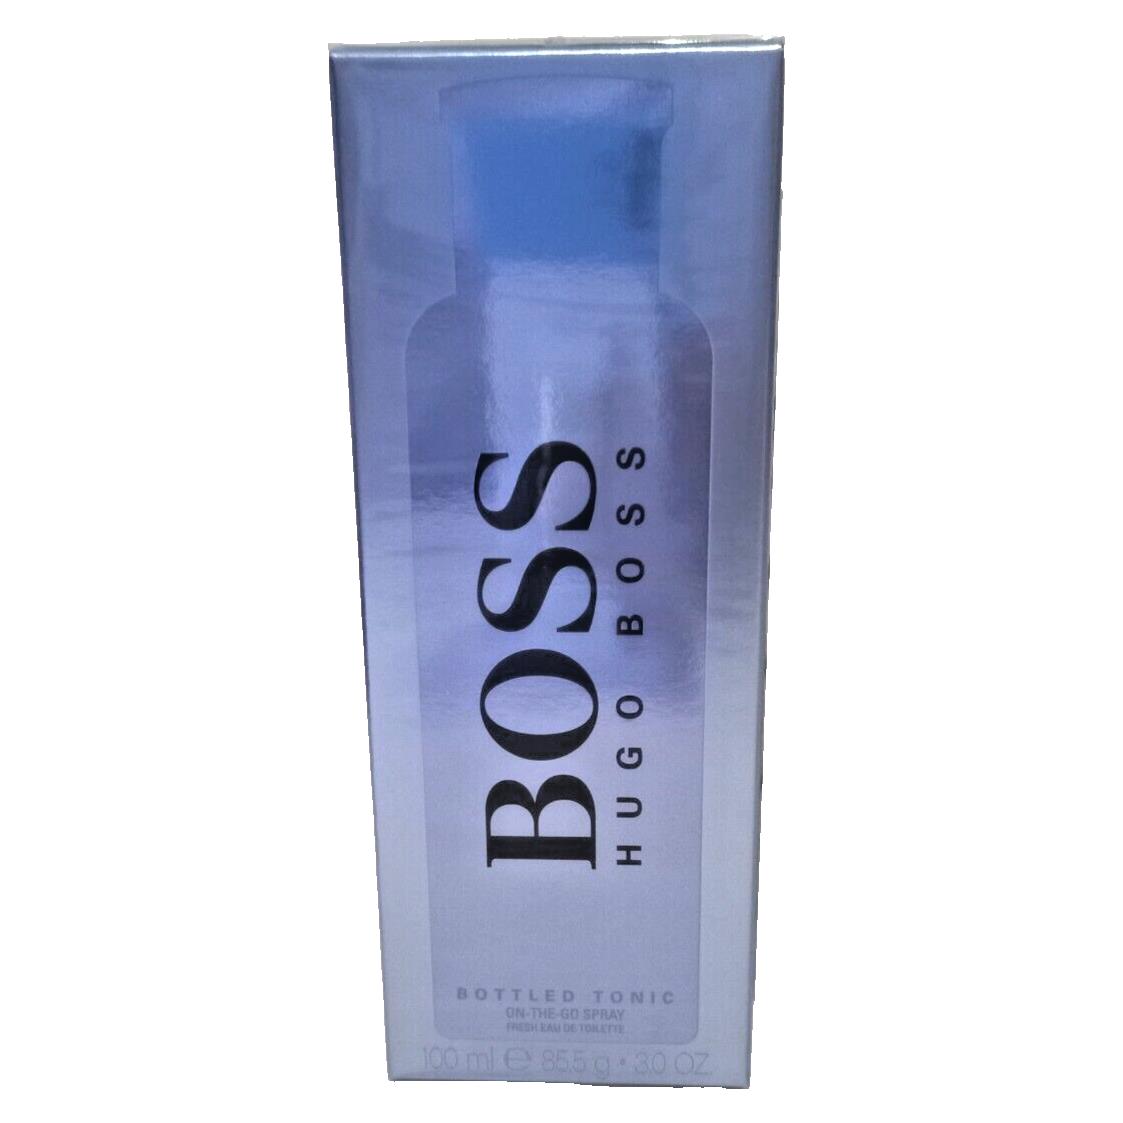 Boss Hugo Boss Bottled Tonic On The Go Spray Fresh Edt For Men 3 fl oz